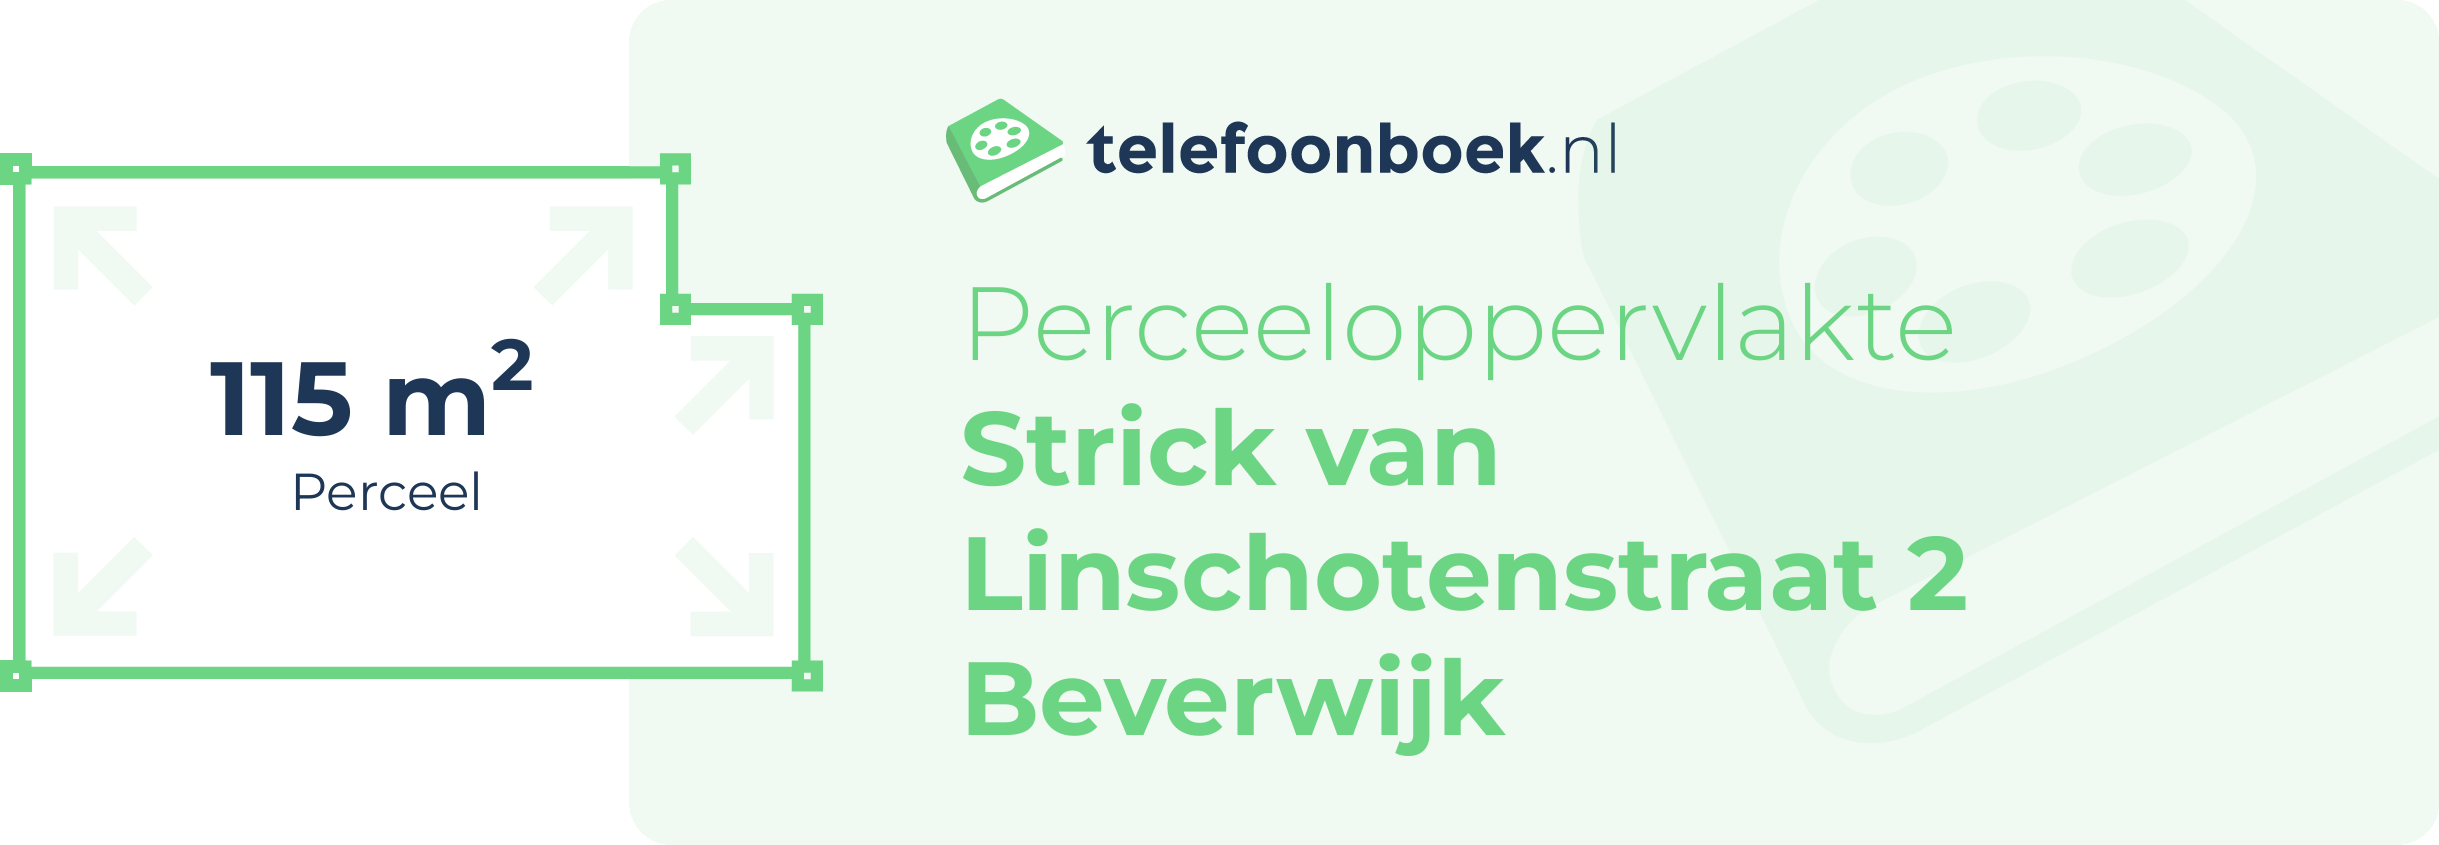 Perceeloppervlakte Strick Van Linschotenstraat 2 Beverwijk